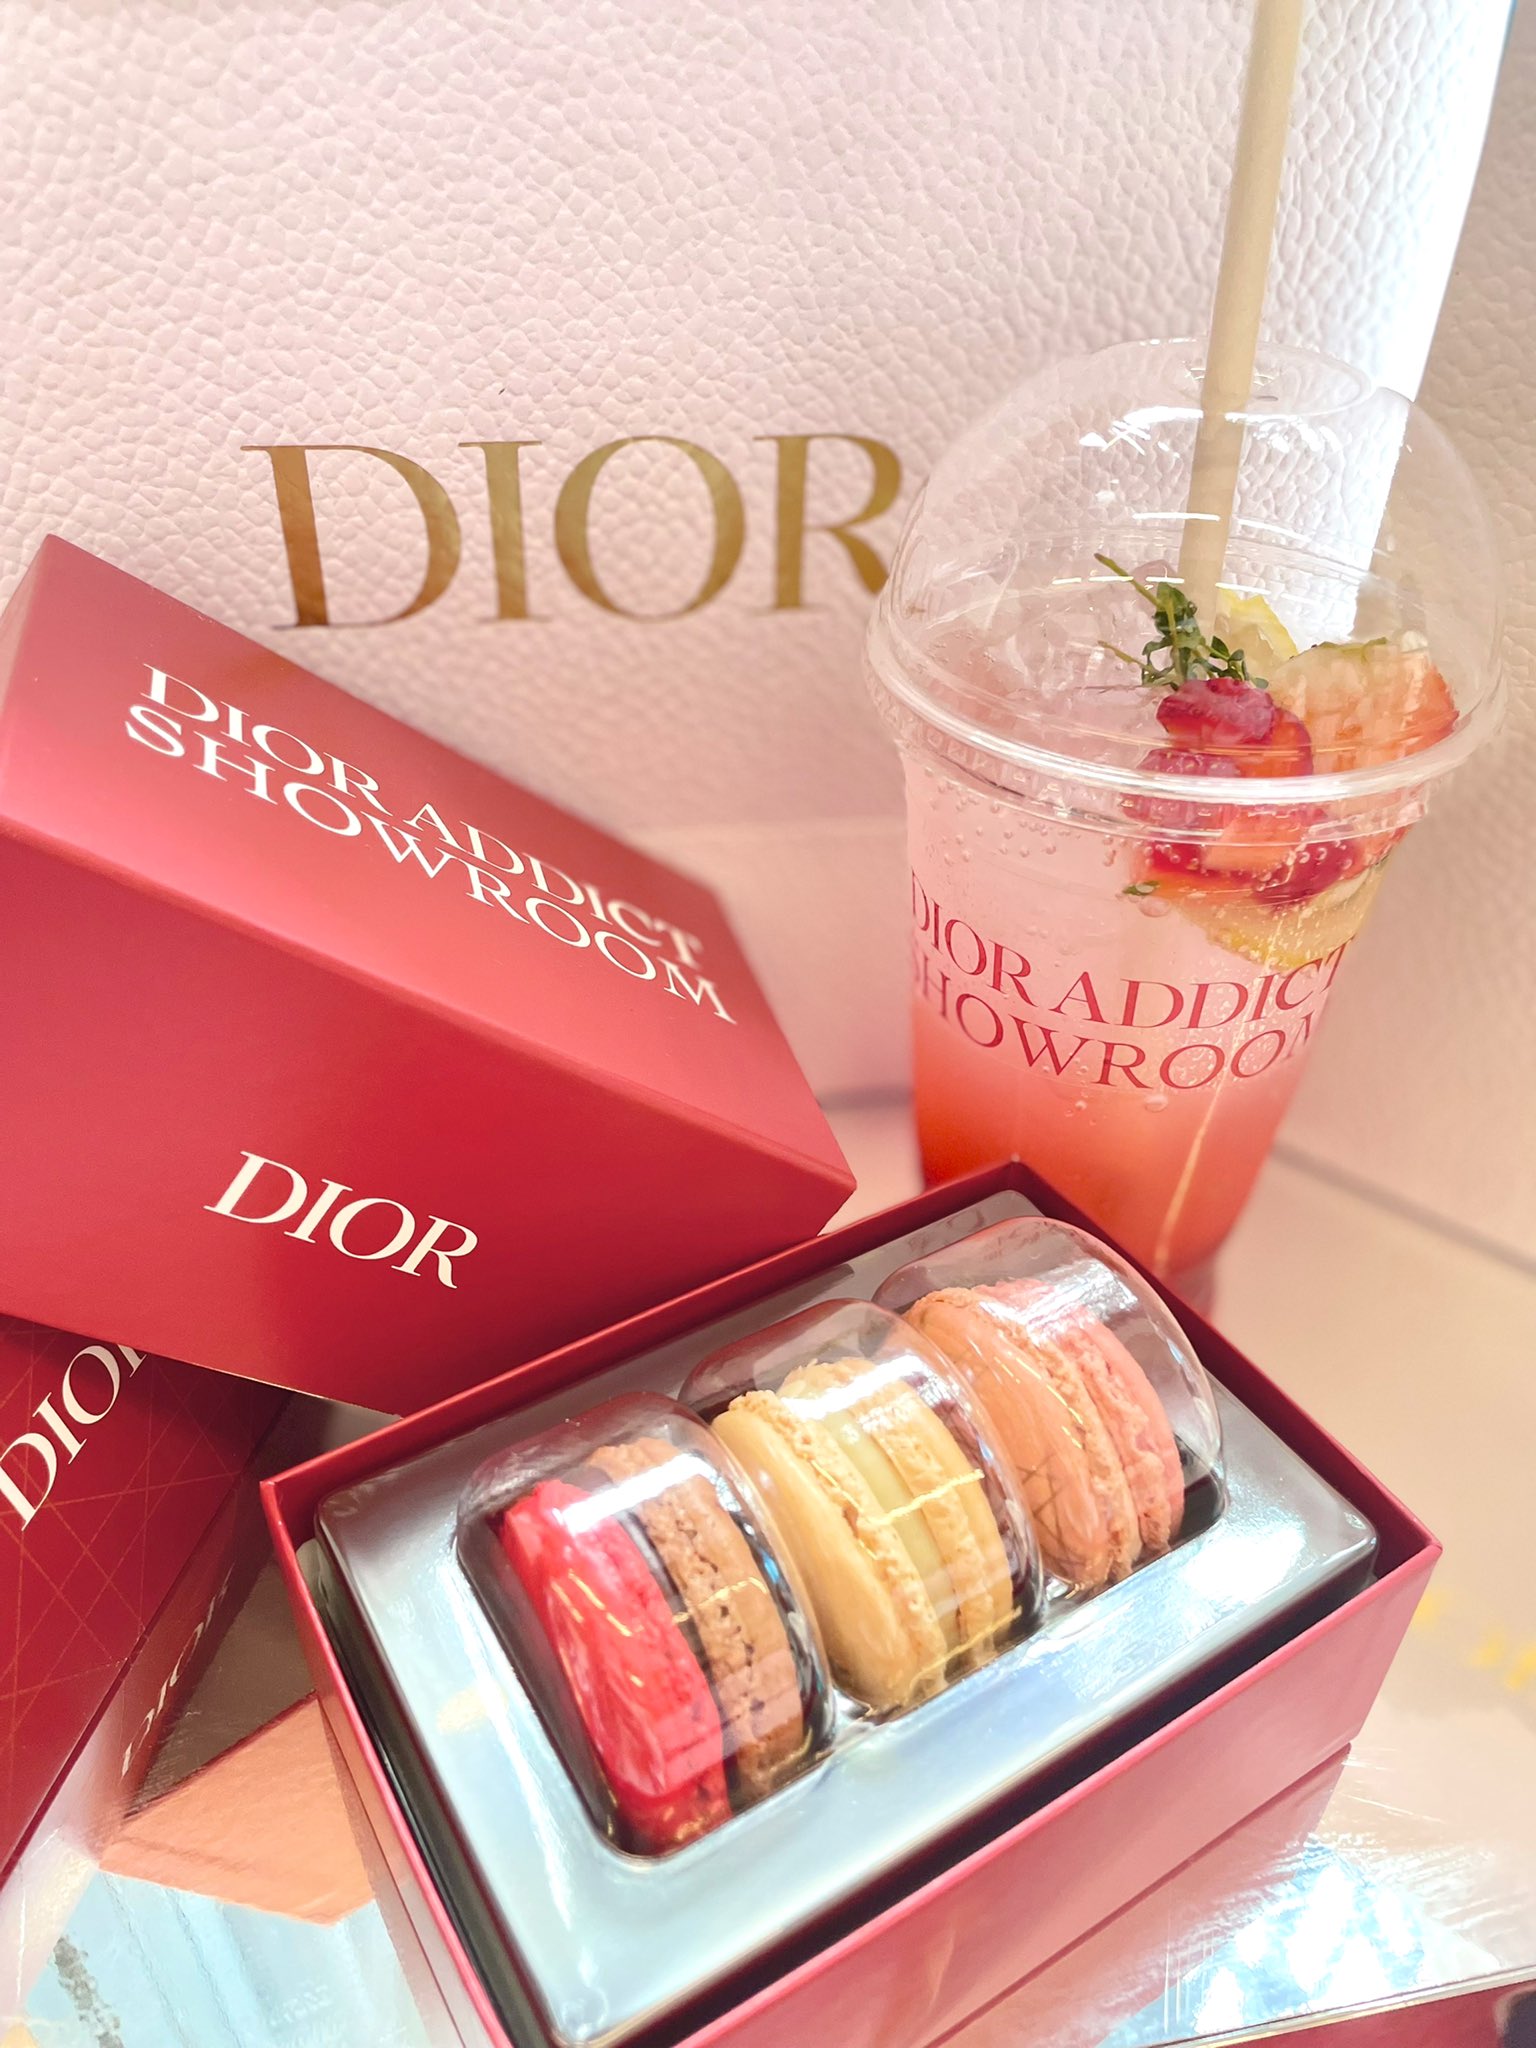 Dior addict showroom 箱 mrdavinci.com.br